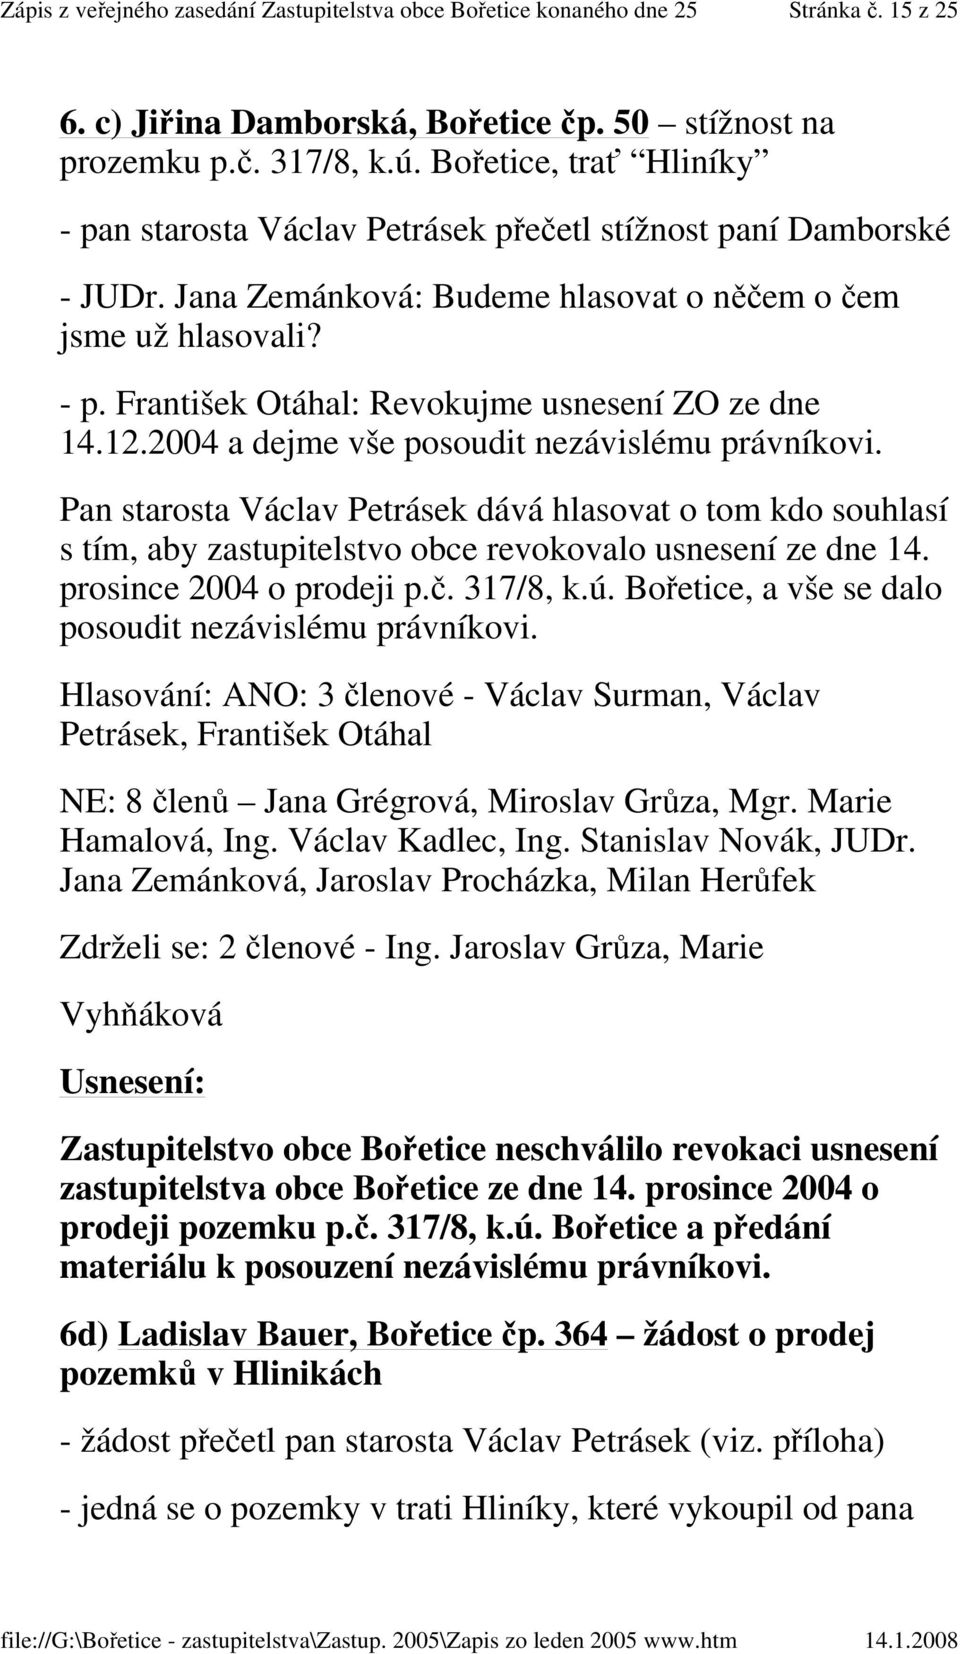 Pan starosta Václav Petrásek dává hlasovat o tom kdo souhlasí s tím, aby zastupitelstvo obce revokovalo usnesení ze dne 14. prosince 2004 o prodeji p.č. 317/8, k.ú.